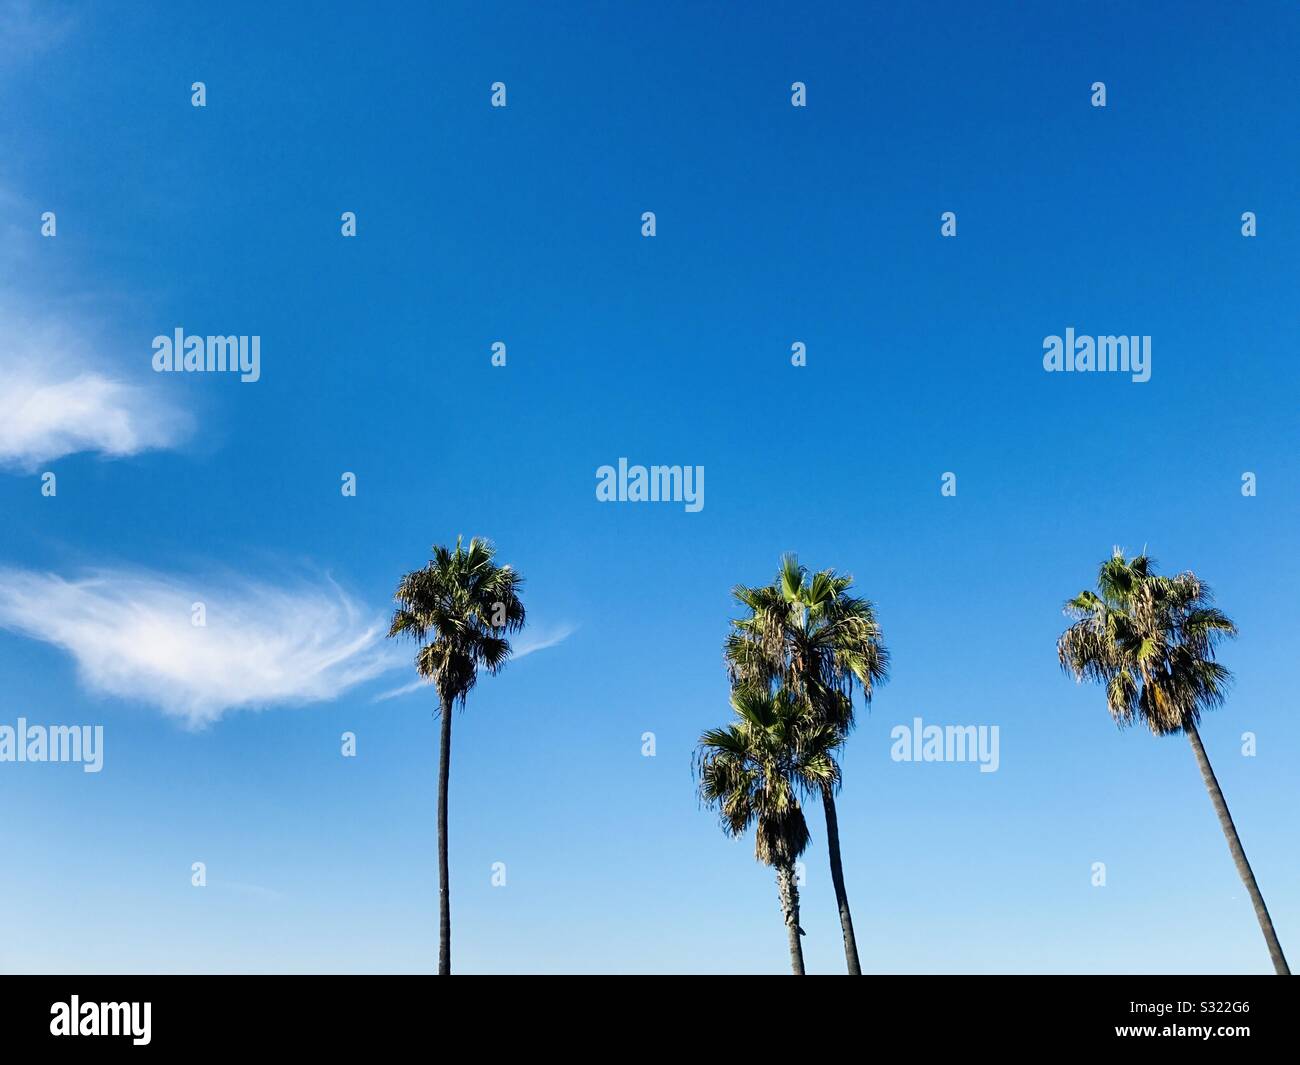 Four palm trees and blue sky. Manhattan Beach, California, USA. Stock Photo